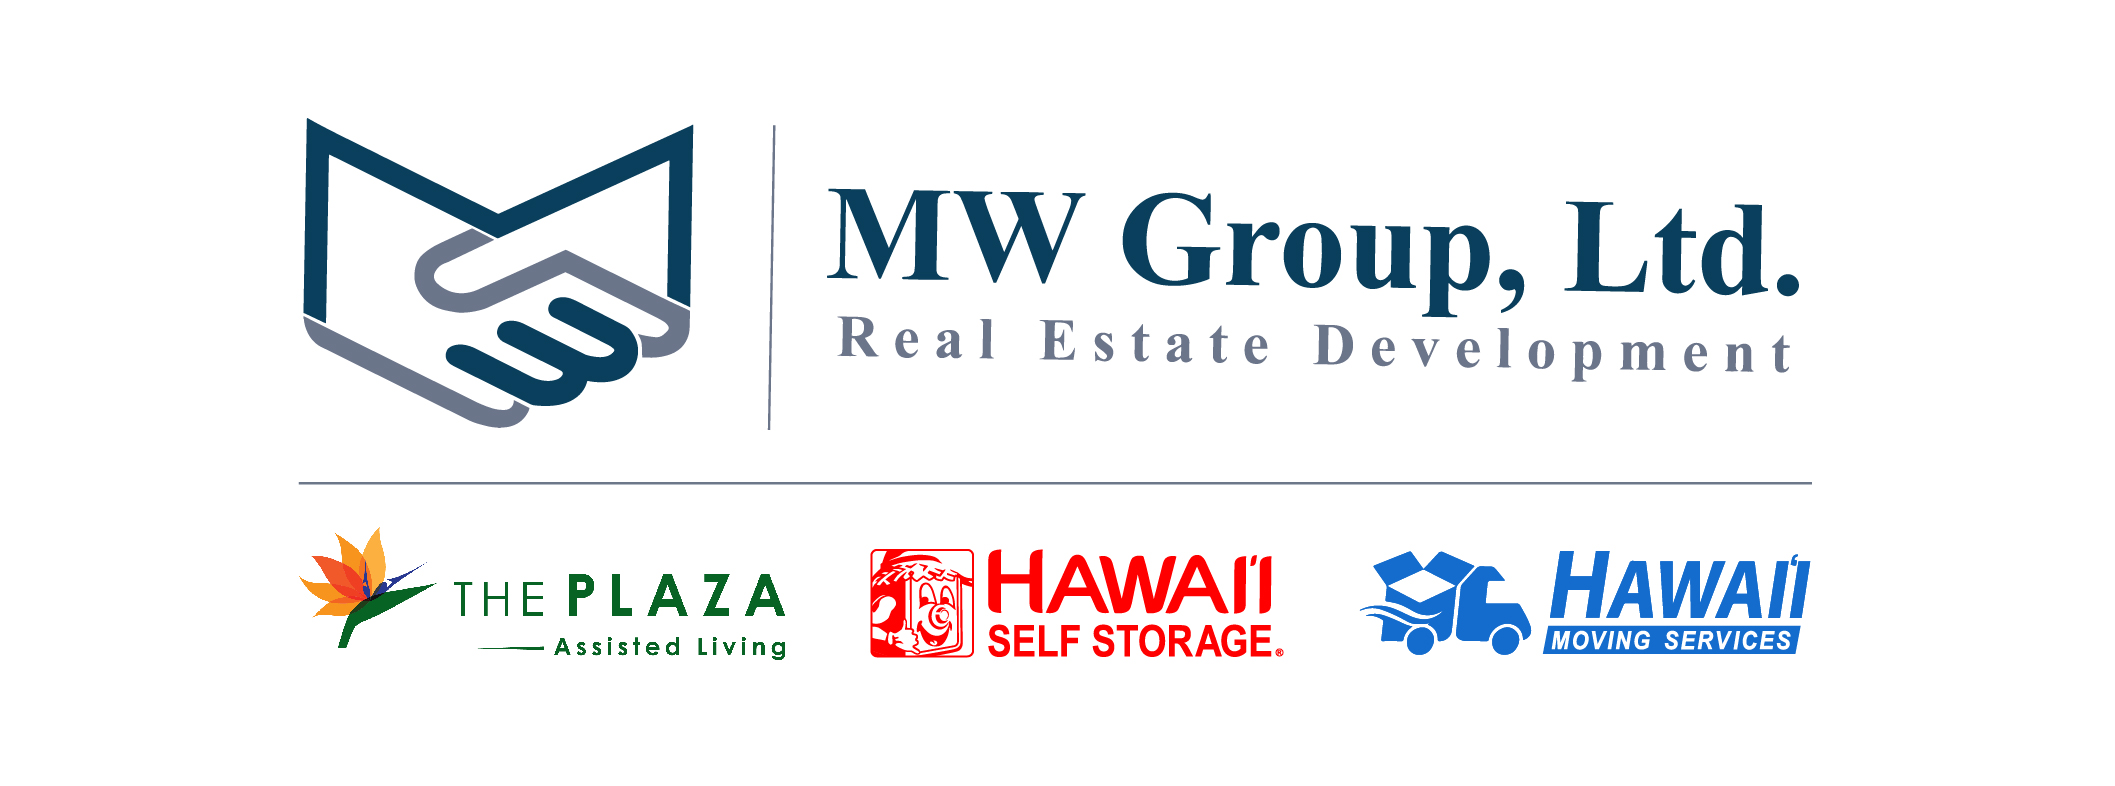 MW Group, Ltd.